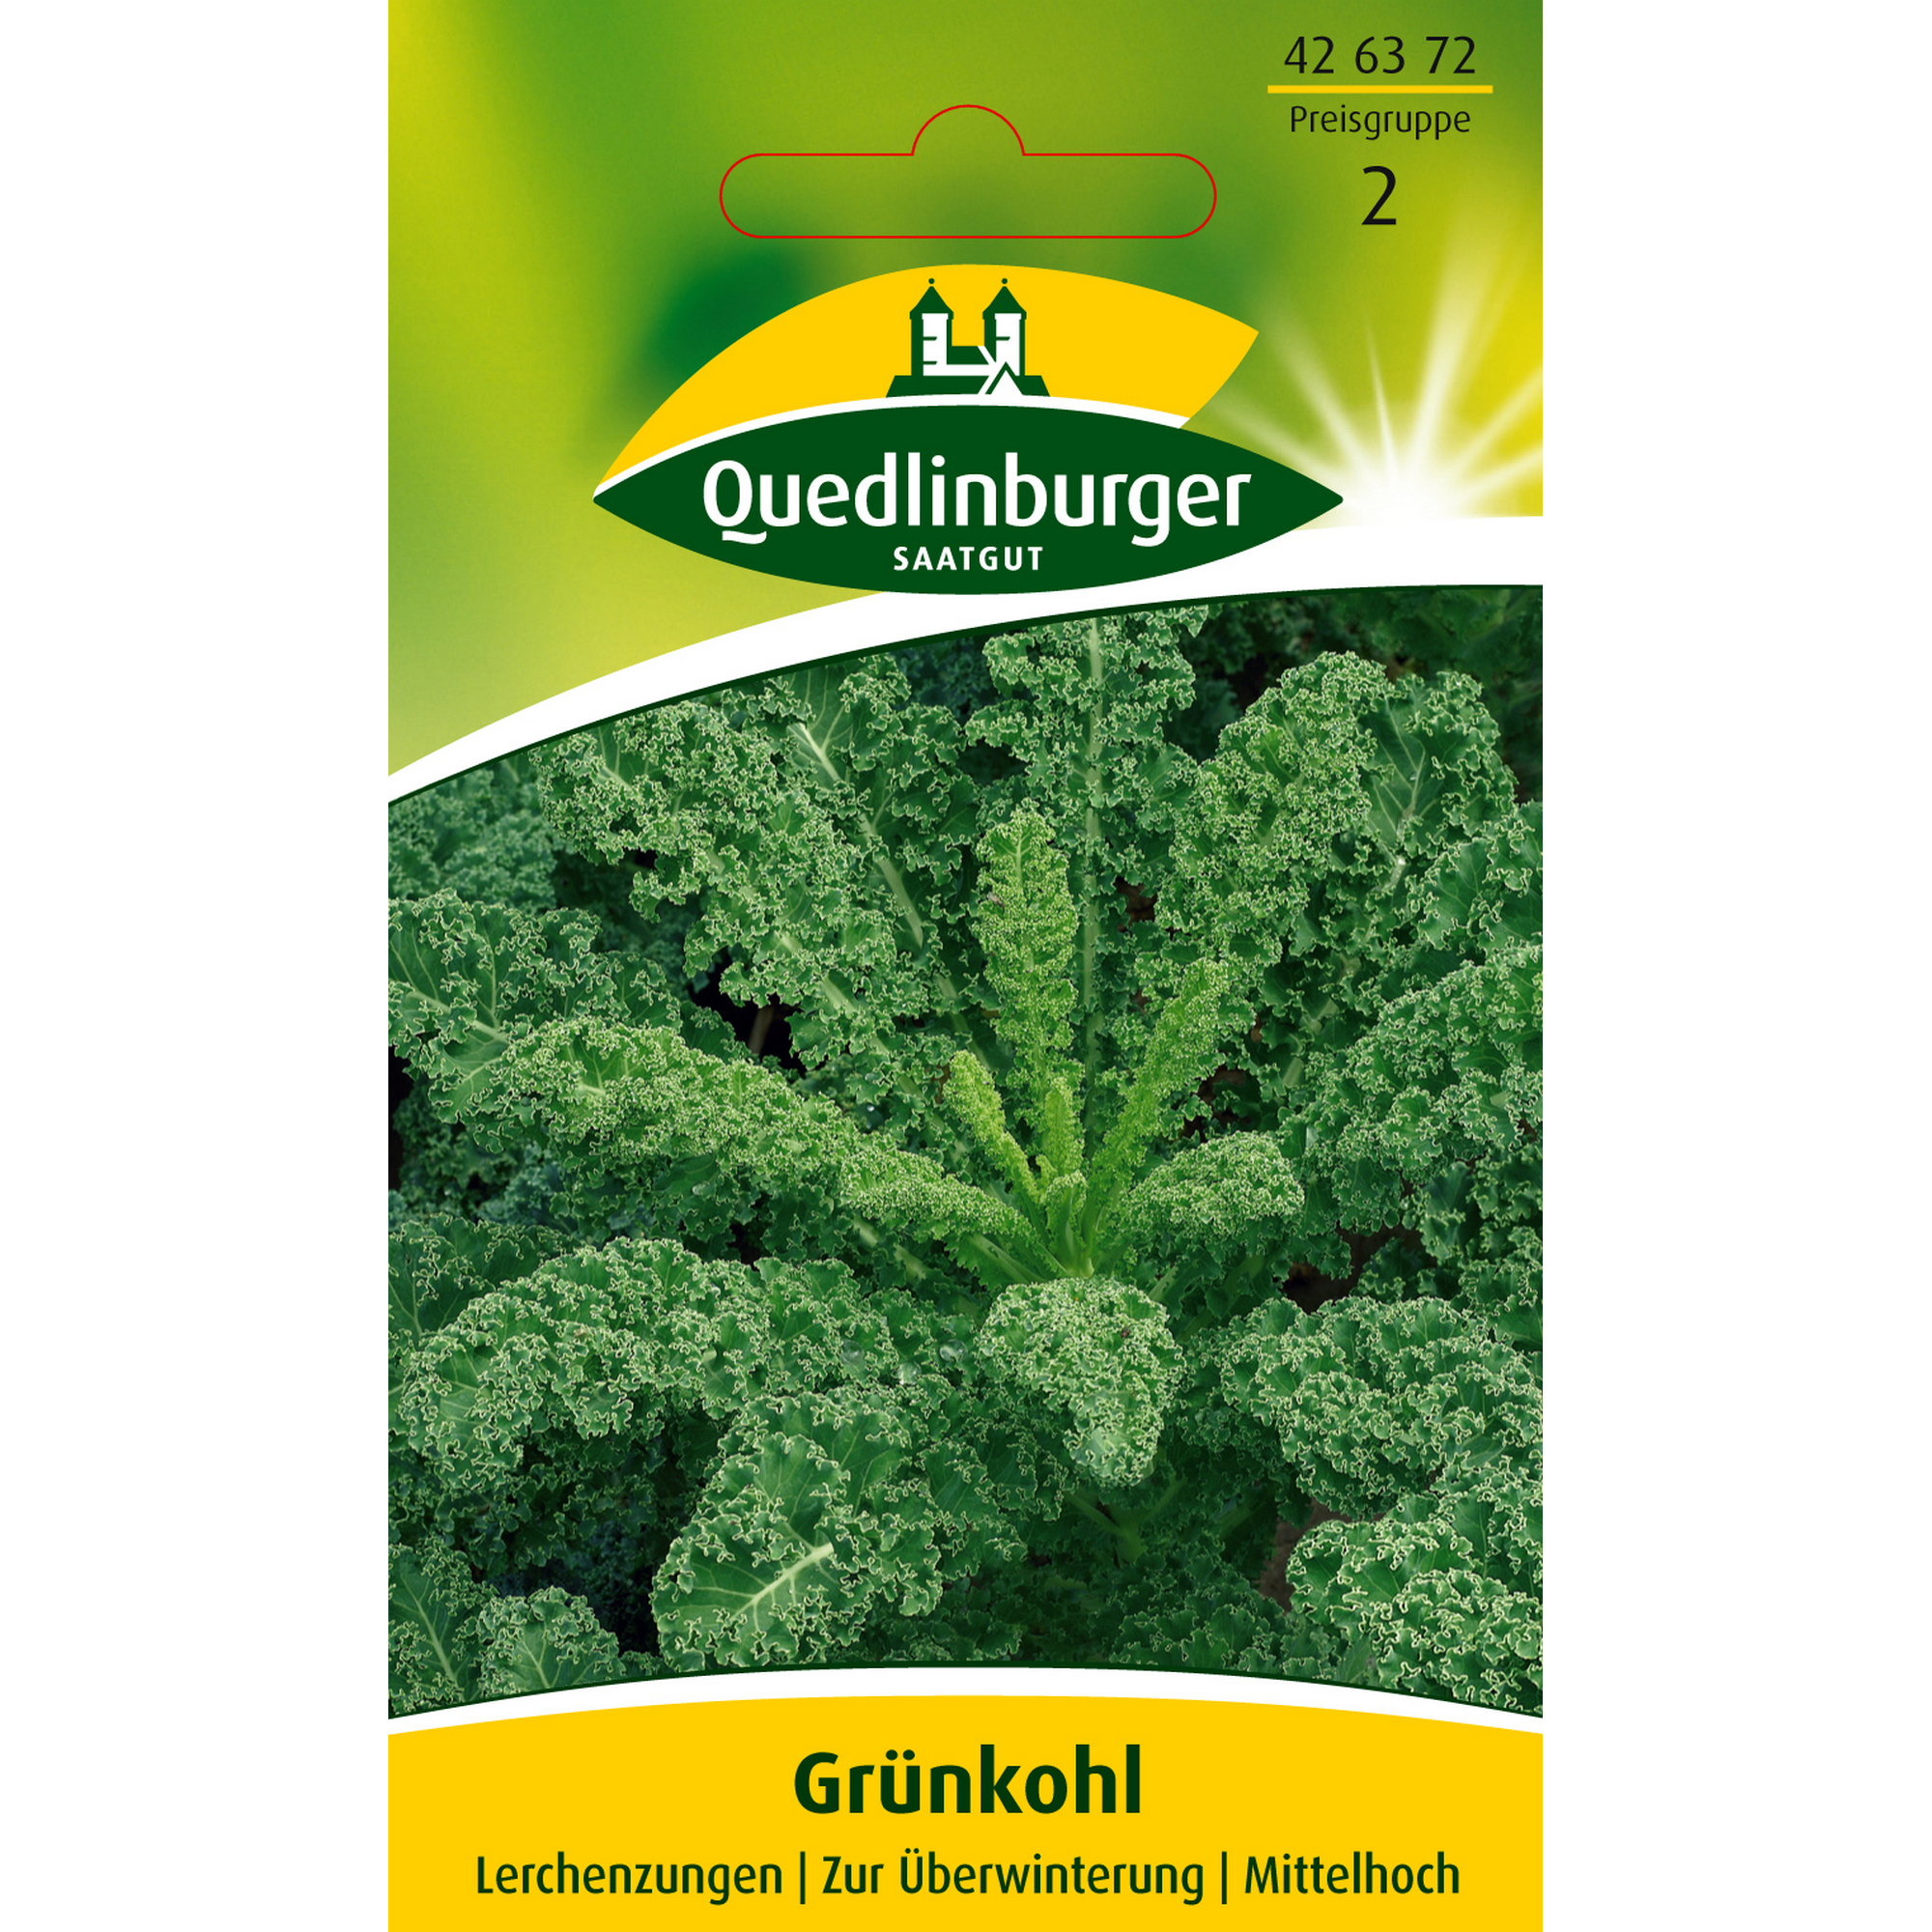 Grünkohl 'Lerchenzungen' + product picture